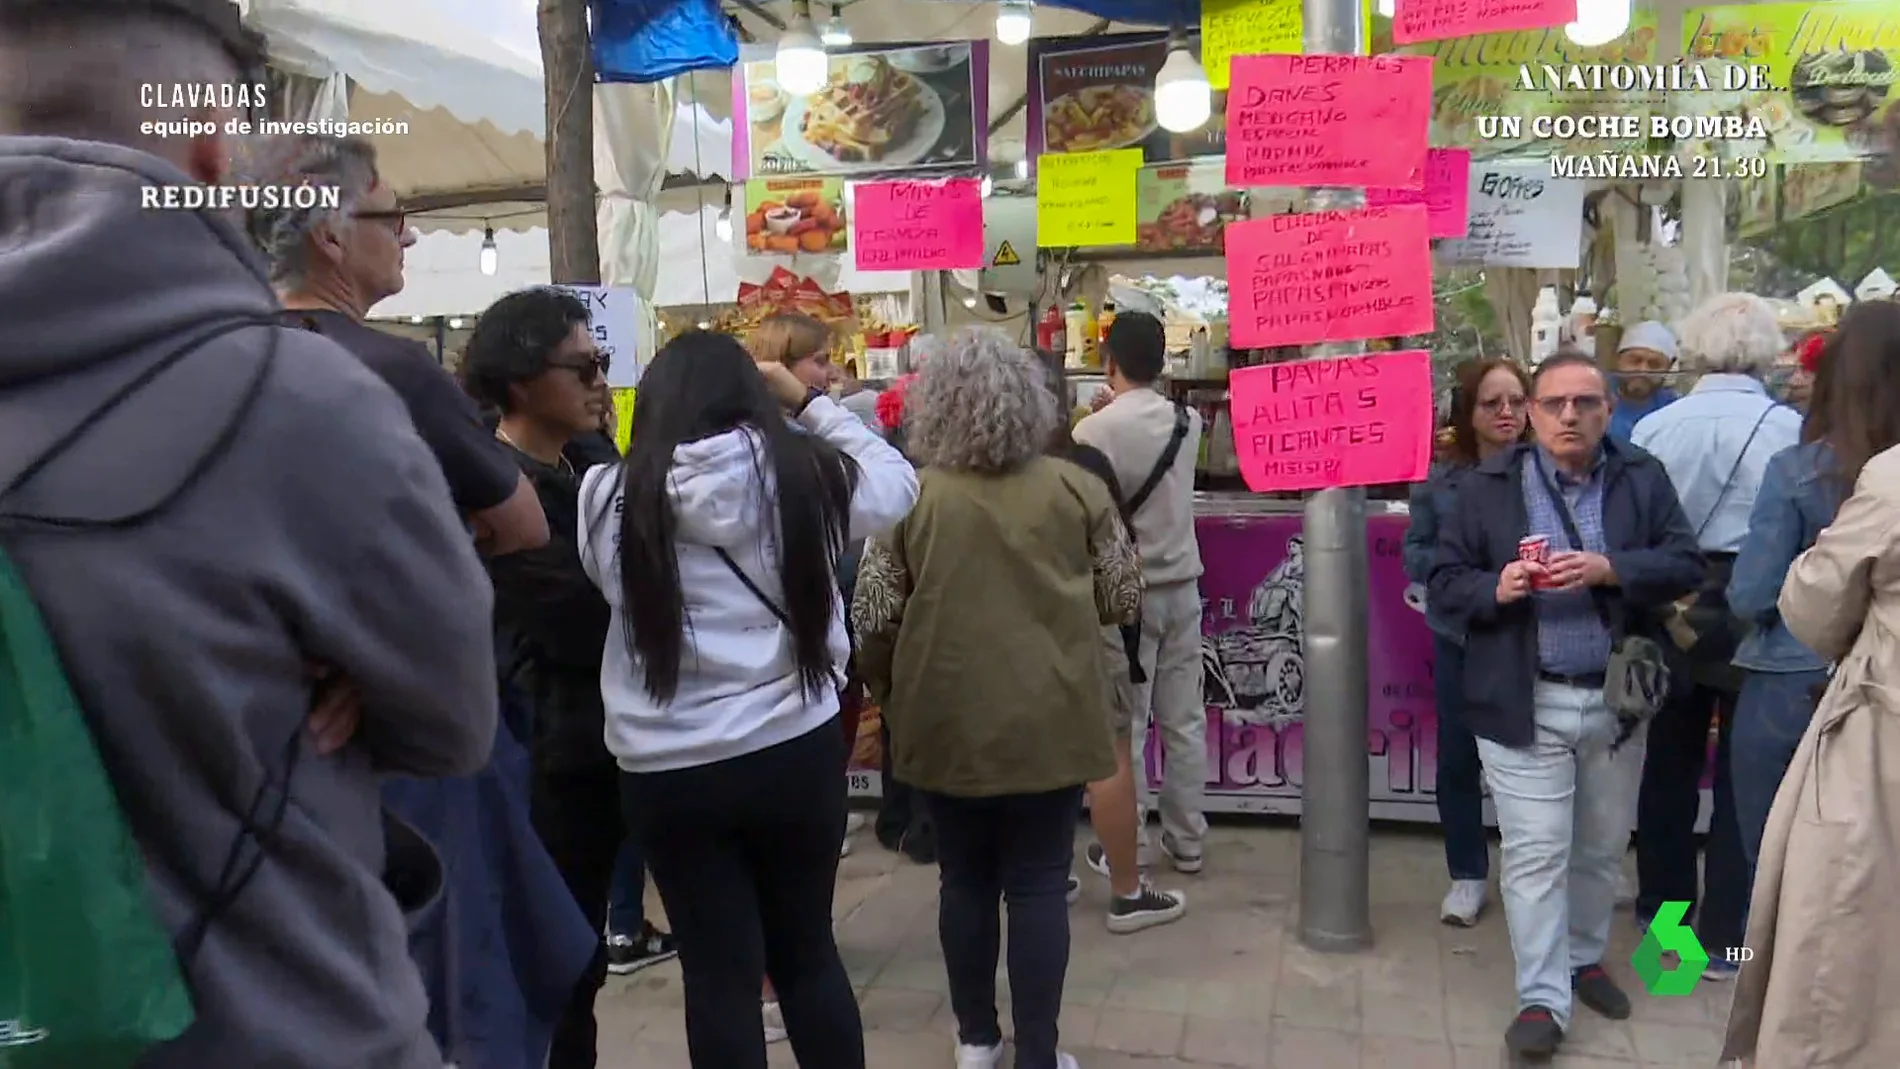 La 'clavada' de San Isidro por la práctica ilegal de los feriantes pactando precios: "Está el doble de caro"